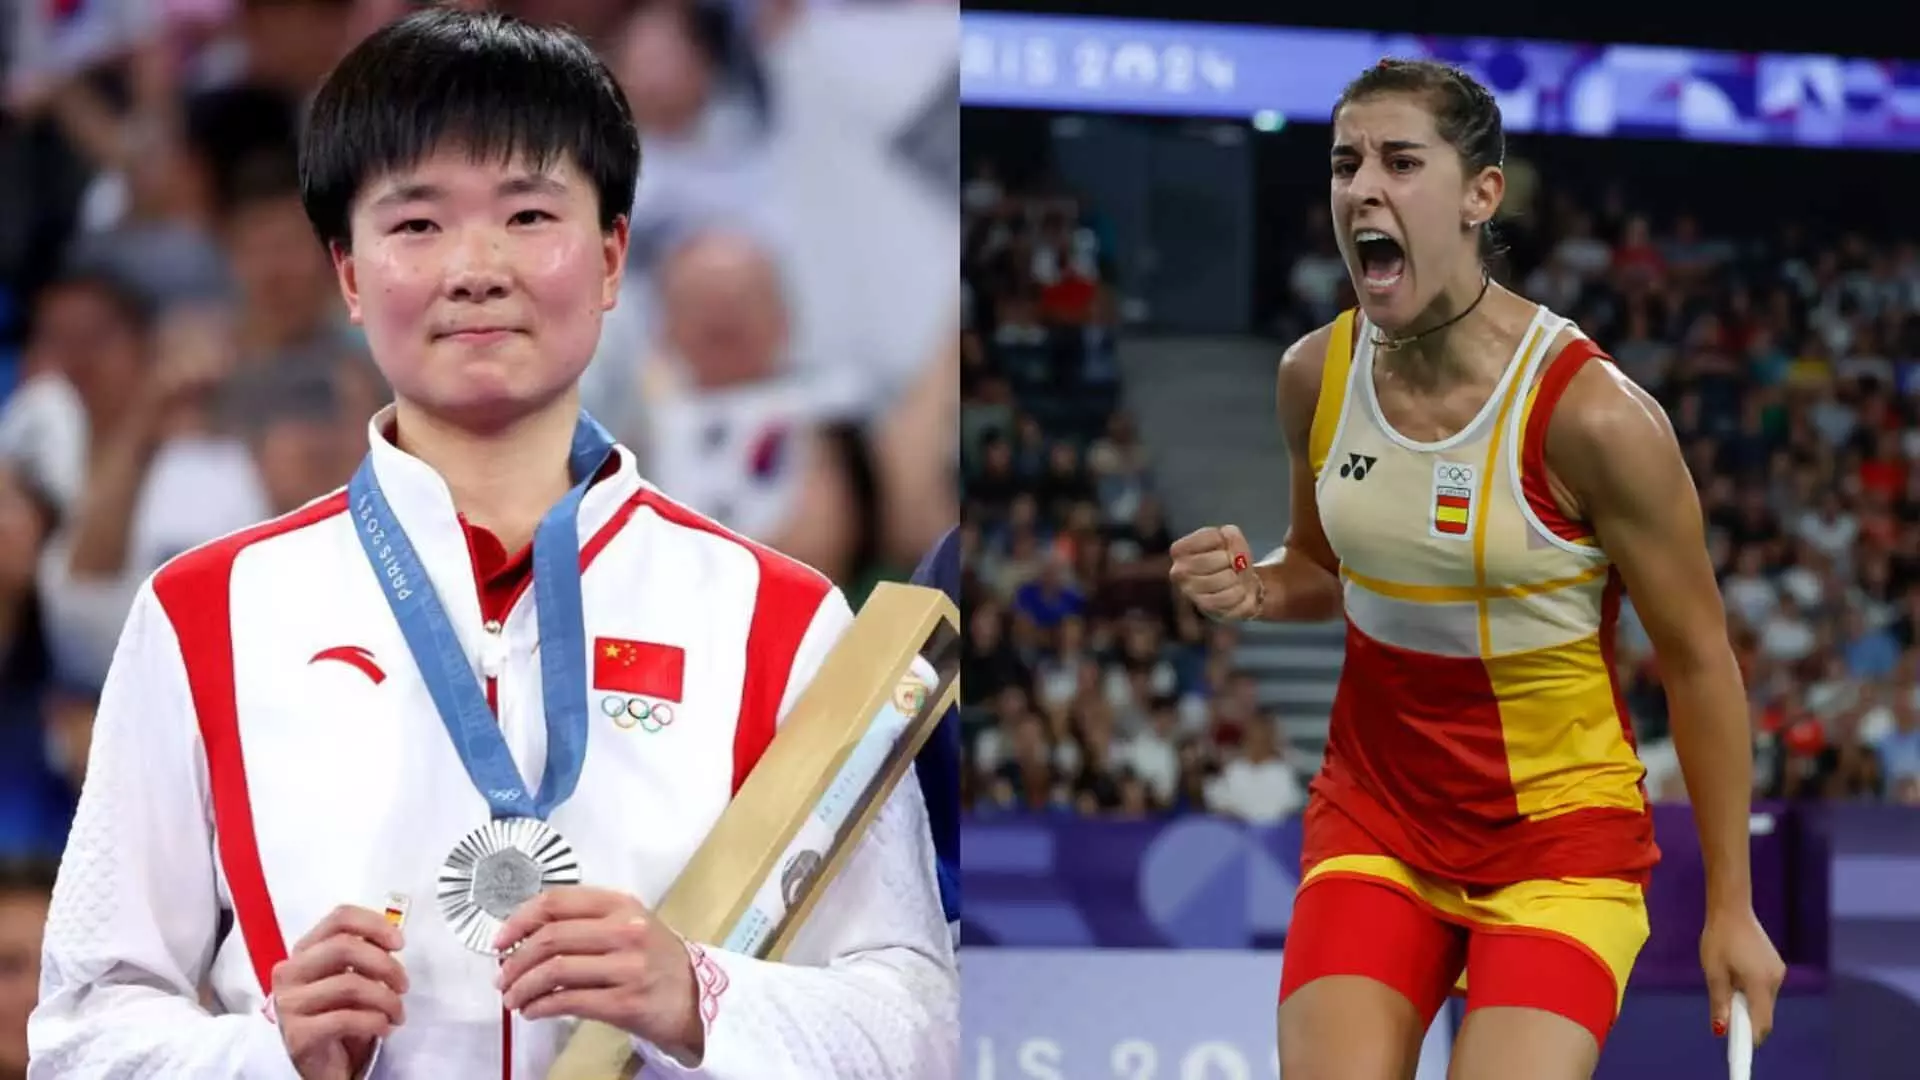 Olympics: चीनी शटलर स्पेनिश ध्वज की पिन से कैरोलिना मारिन को दिया ट्रिब्यूट